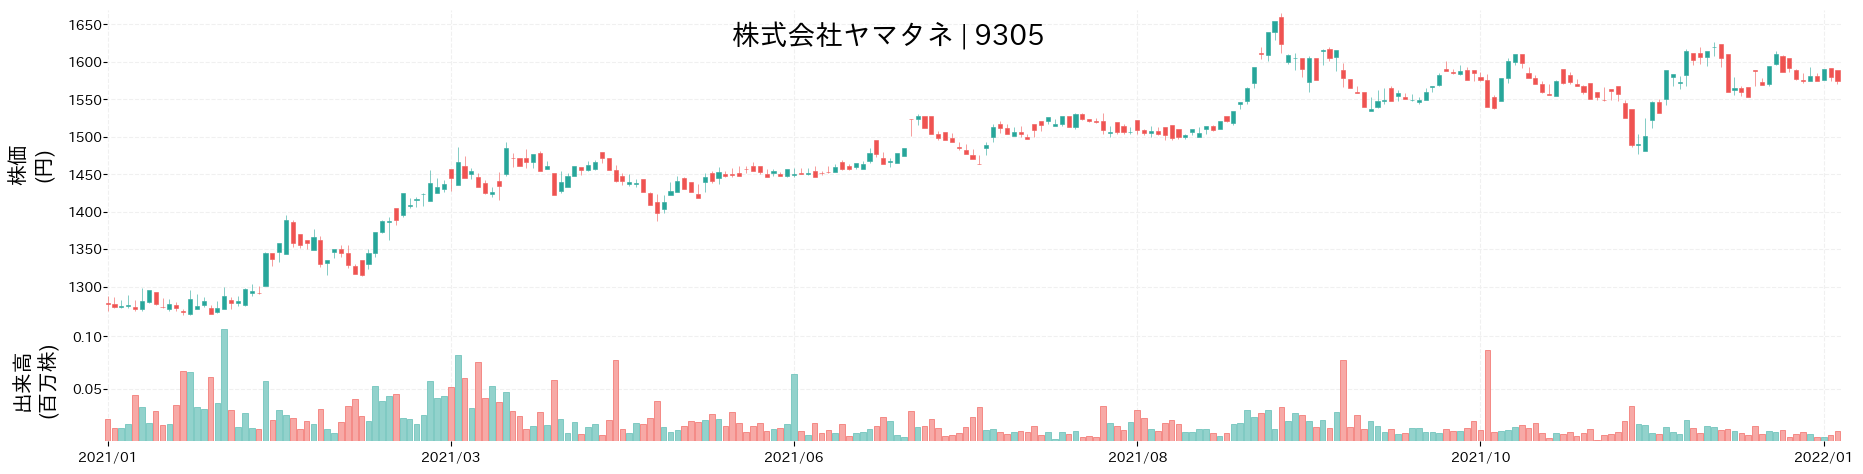 ヤマタネの株価推移(2021)